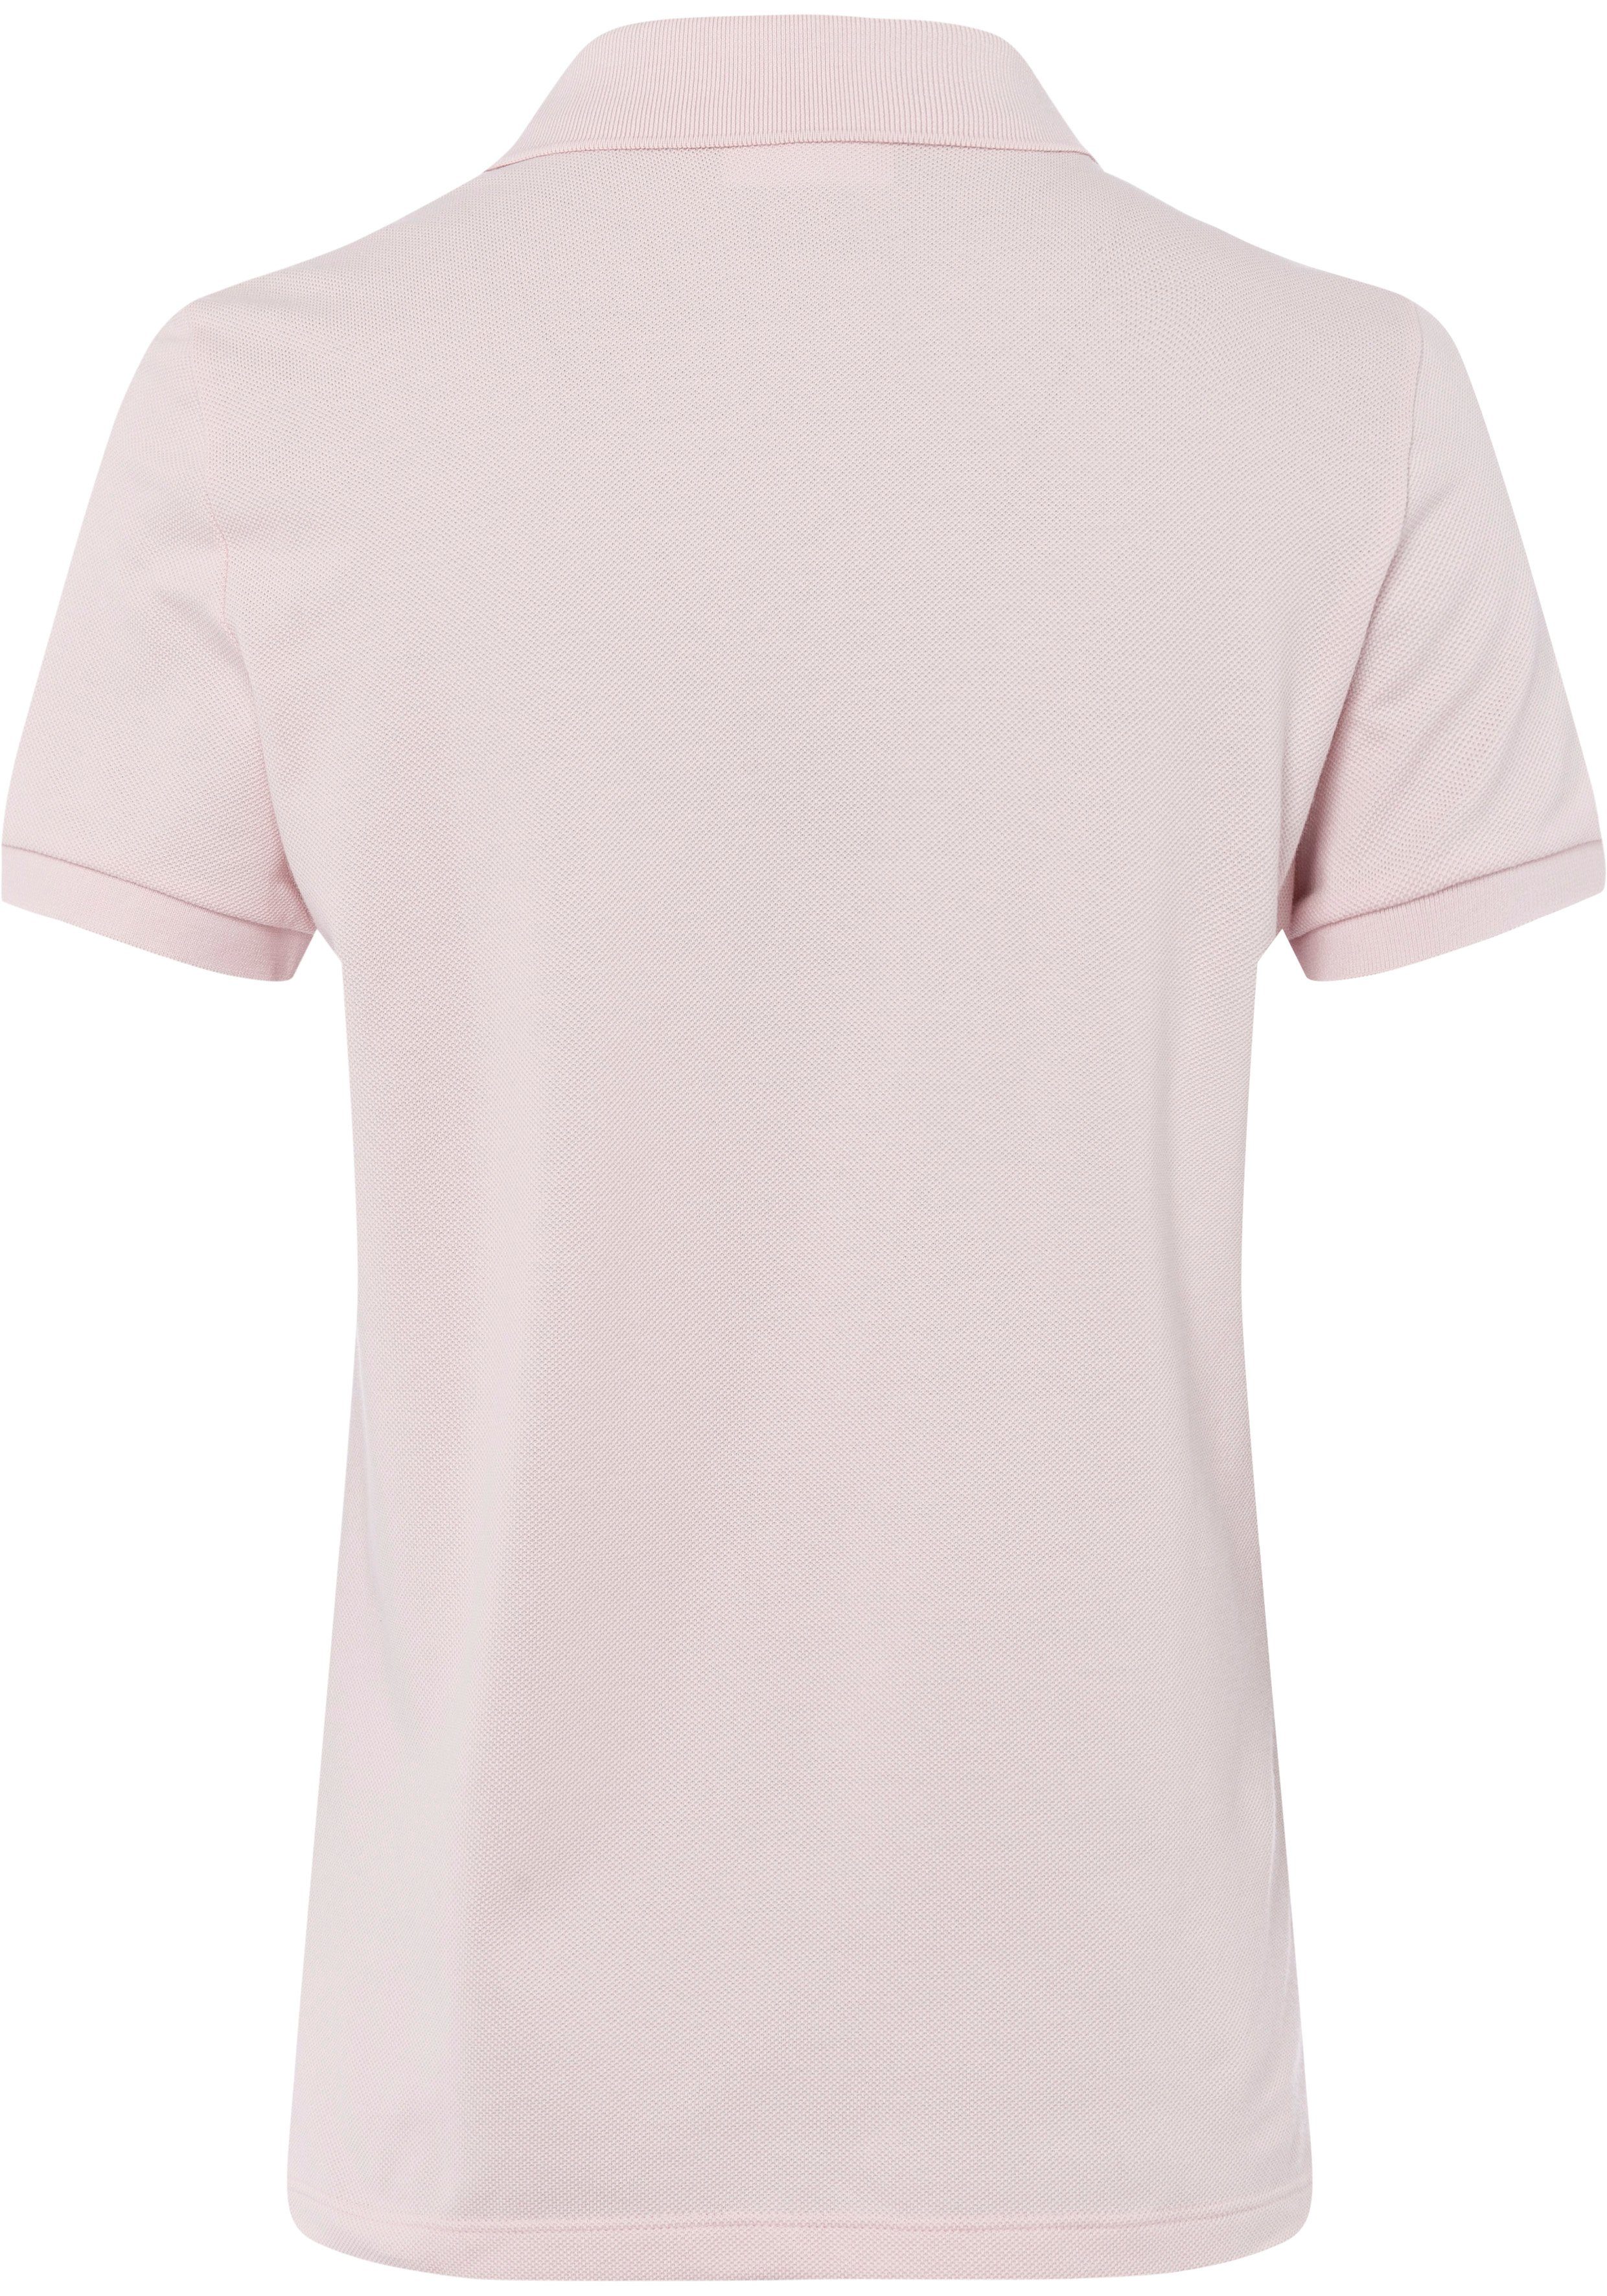 Lacoste Poloshirt mit auf Lacoste-Logo-Patch rosa der Brust